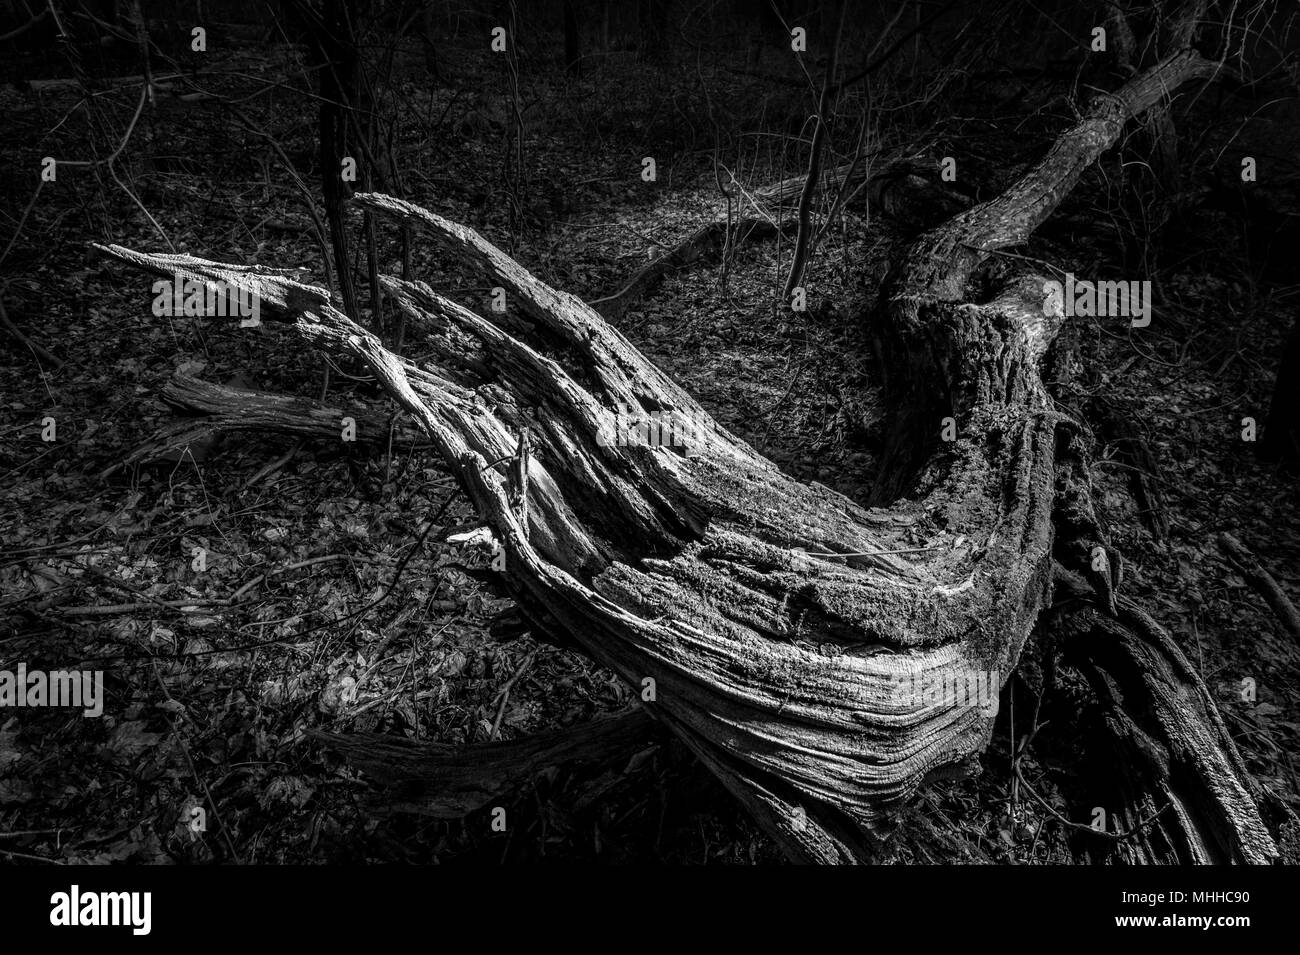 Vue artistique de l'arbre tombé dans la nuit Banque D'Images